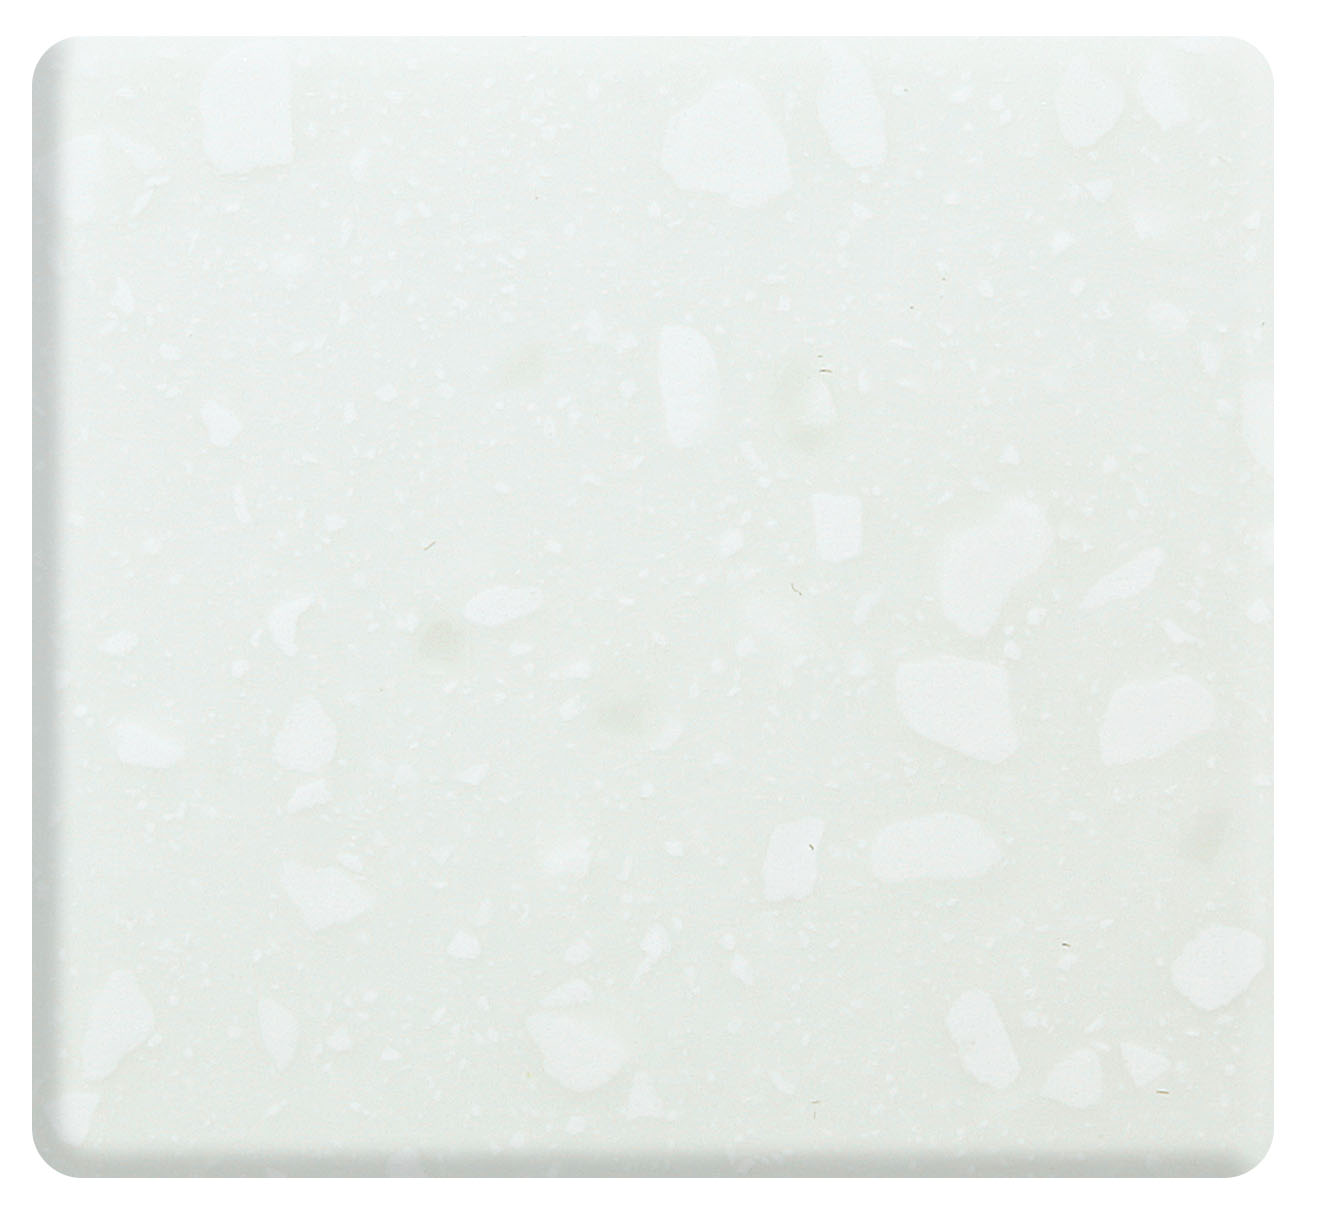 Fregadero cuadrado de baño de superficie sólida de acrílico modificado blanco puro de alta calidad